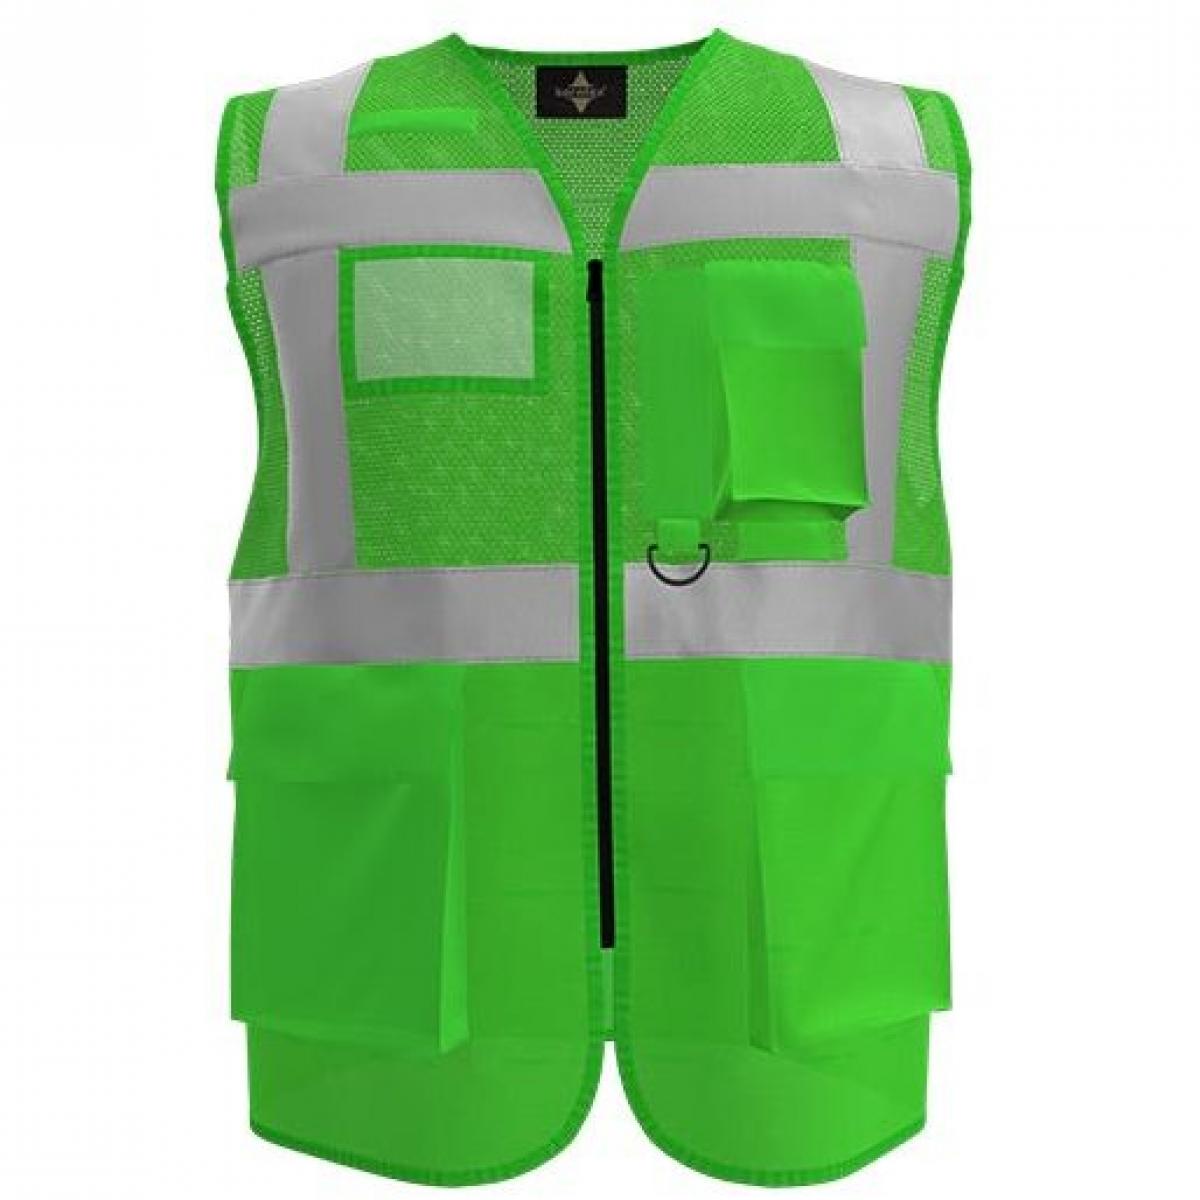 Hersteller: Korntex Herstellernummer: KXEXQ Artikelbezeichnung: Multifunkitons-Warnweste Mesh Multifunction Vest Farbe: Green